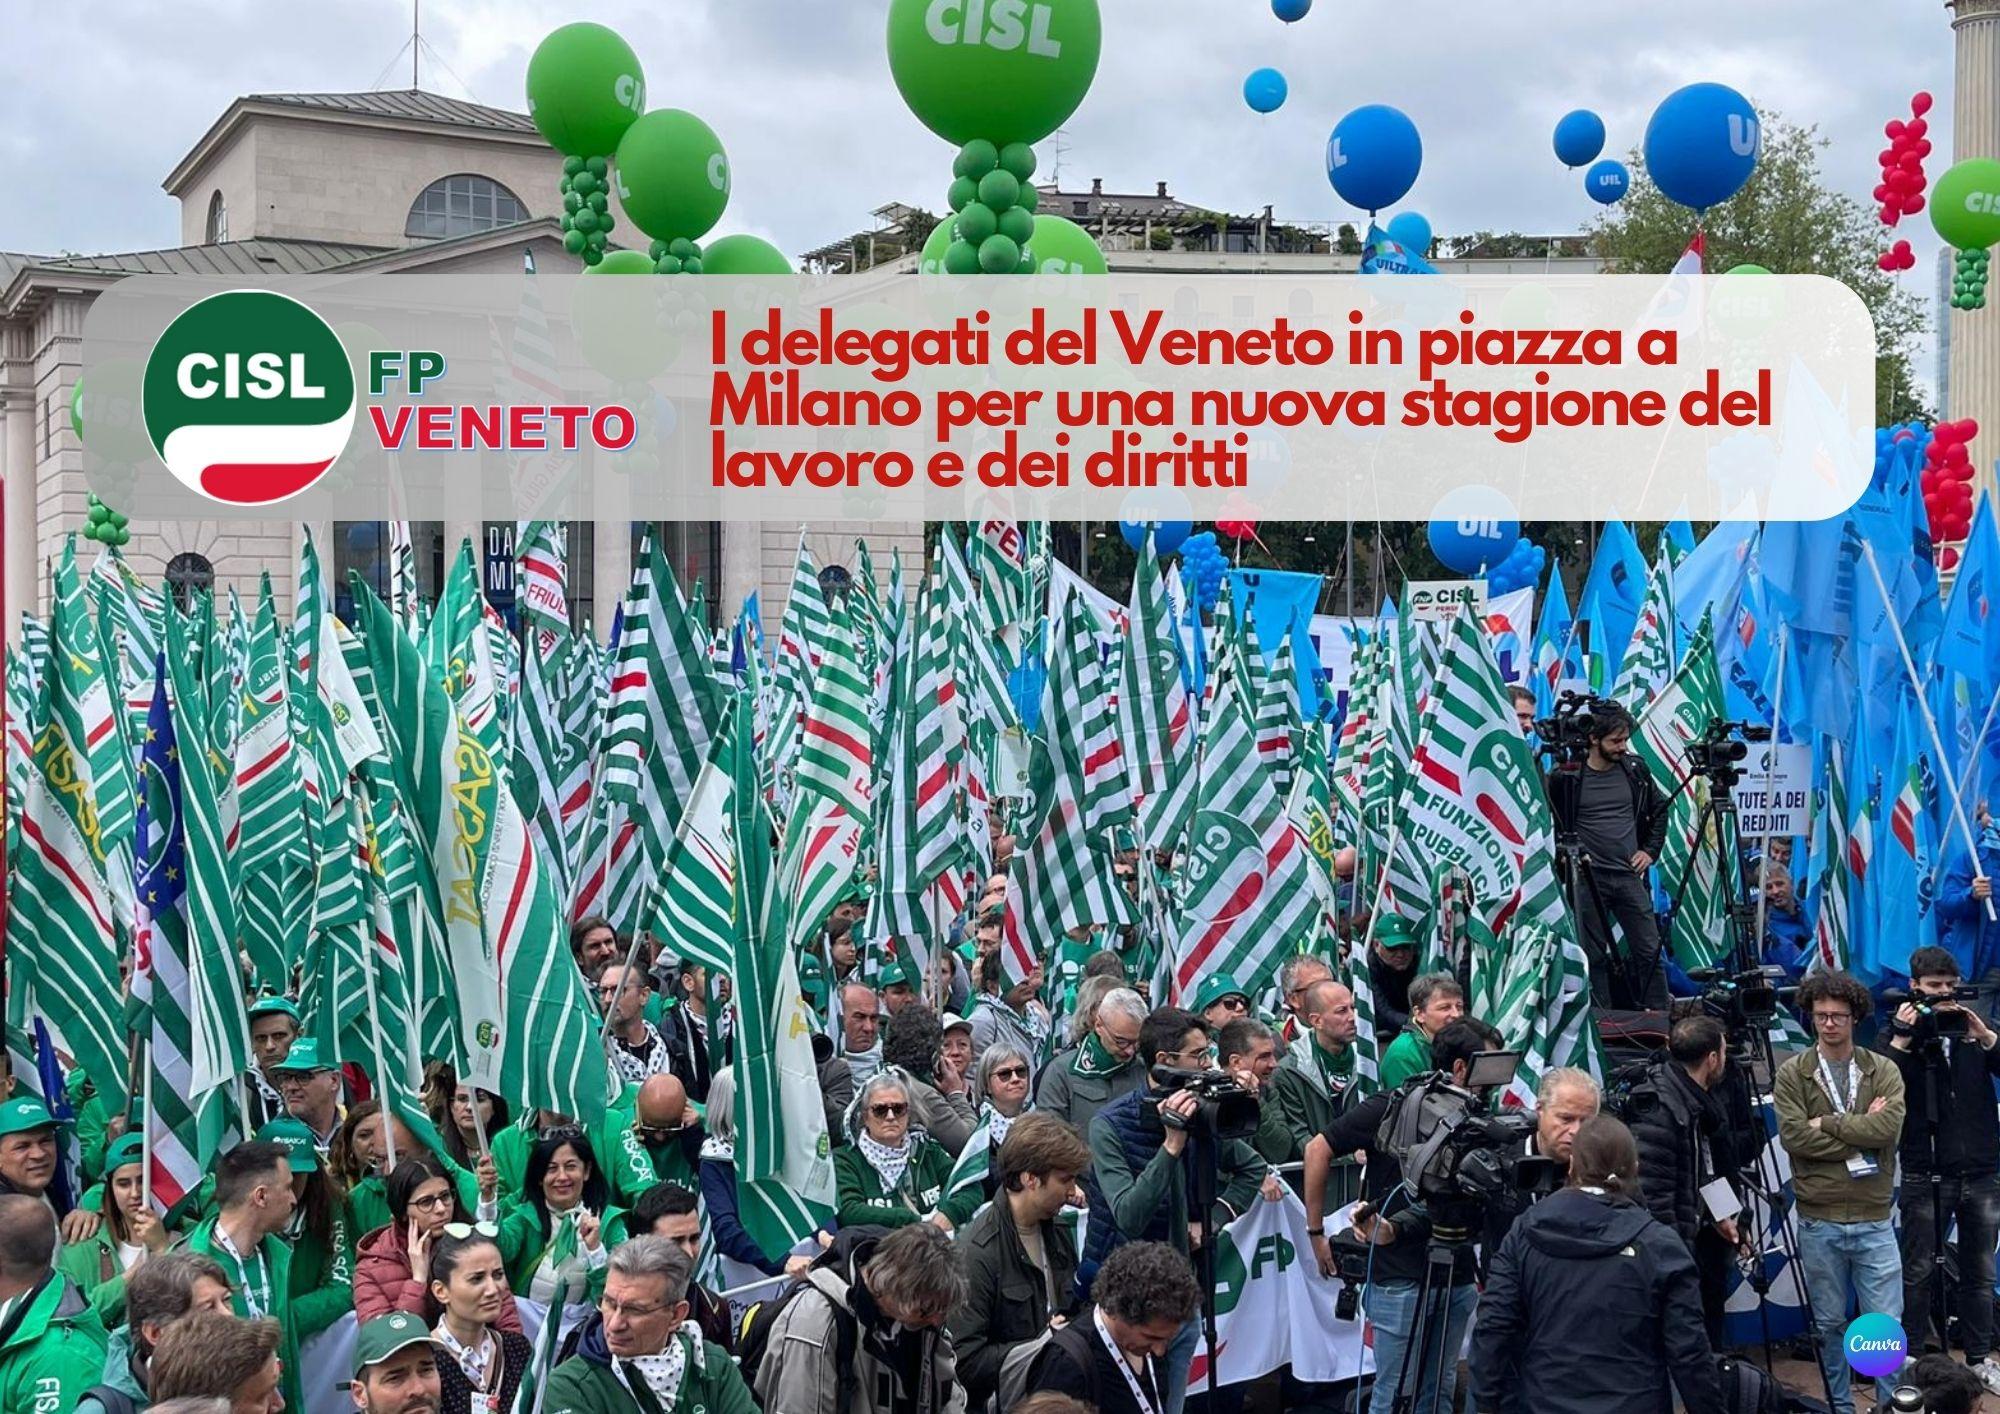 CISL FP Veneto. I delegati veneti in piazza per una nuova stagione del lavoro e dei diritti